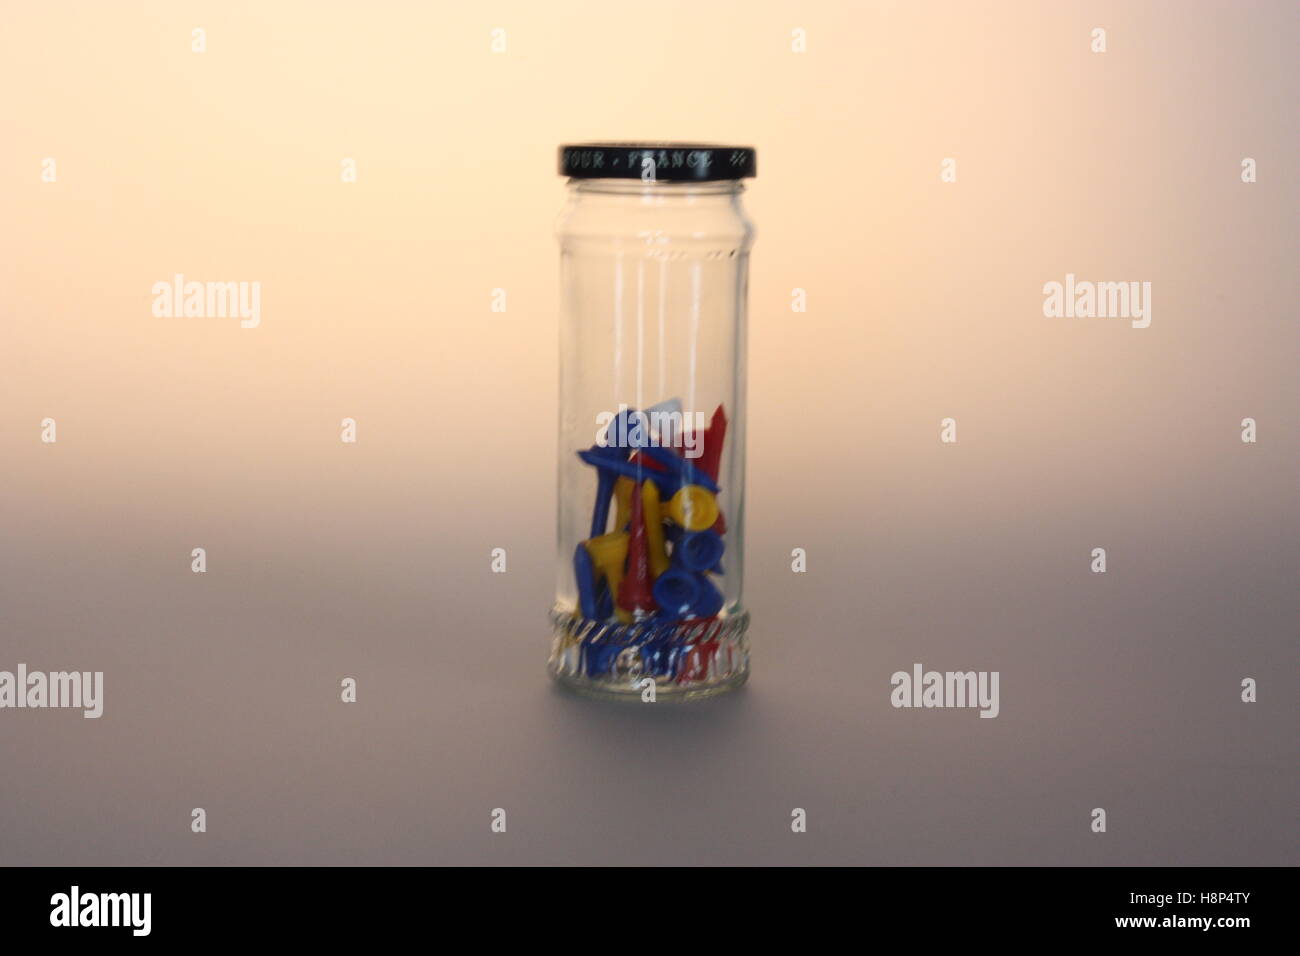 Glas mit Stifte - Stillleben - Leuchtkasten Bild Stockfoto